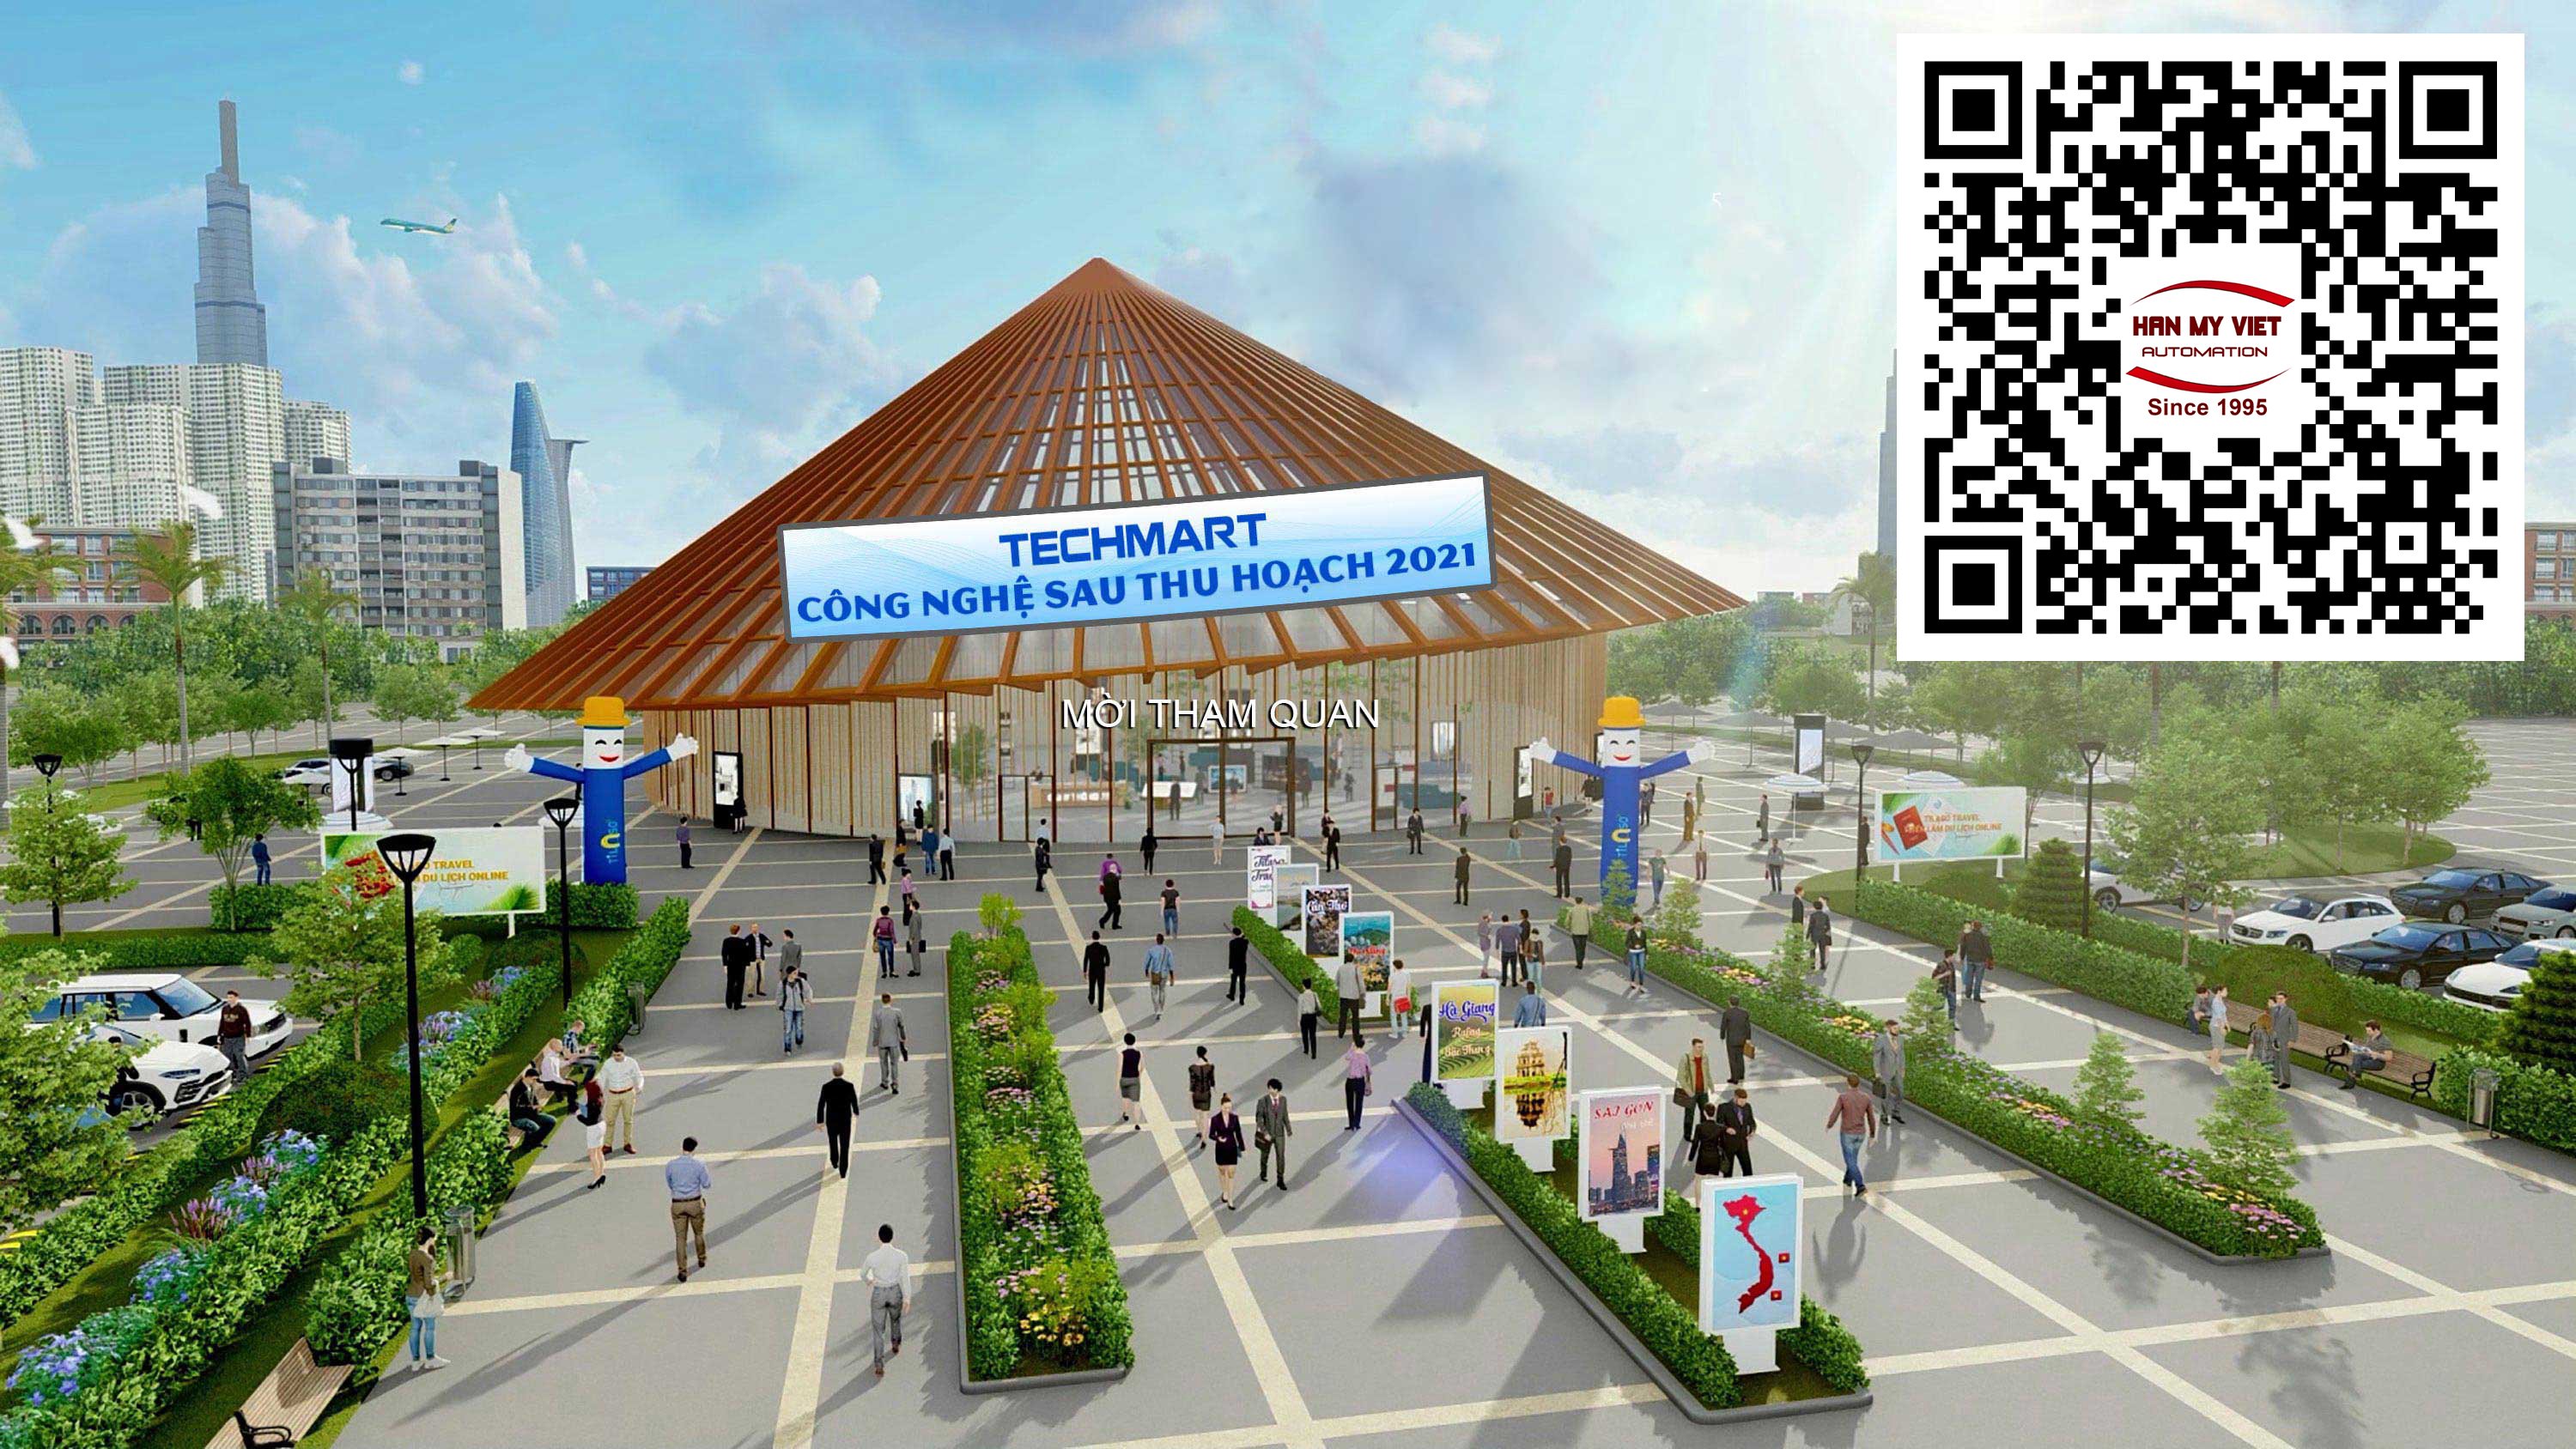 Hàn Mỹ VIệt tham gia triển lãm online Techmart chuyên ngành Công nghệ sau thu hoạch 2021